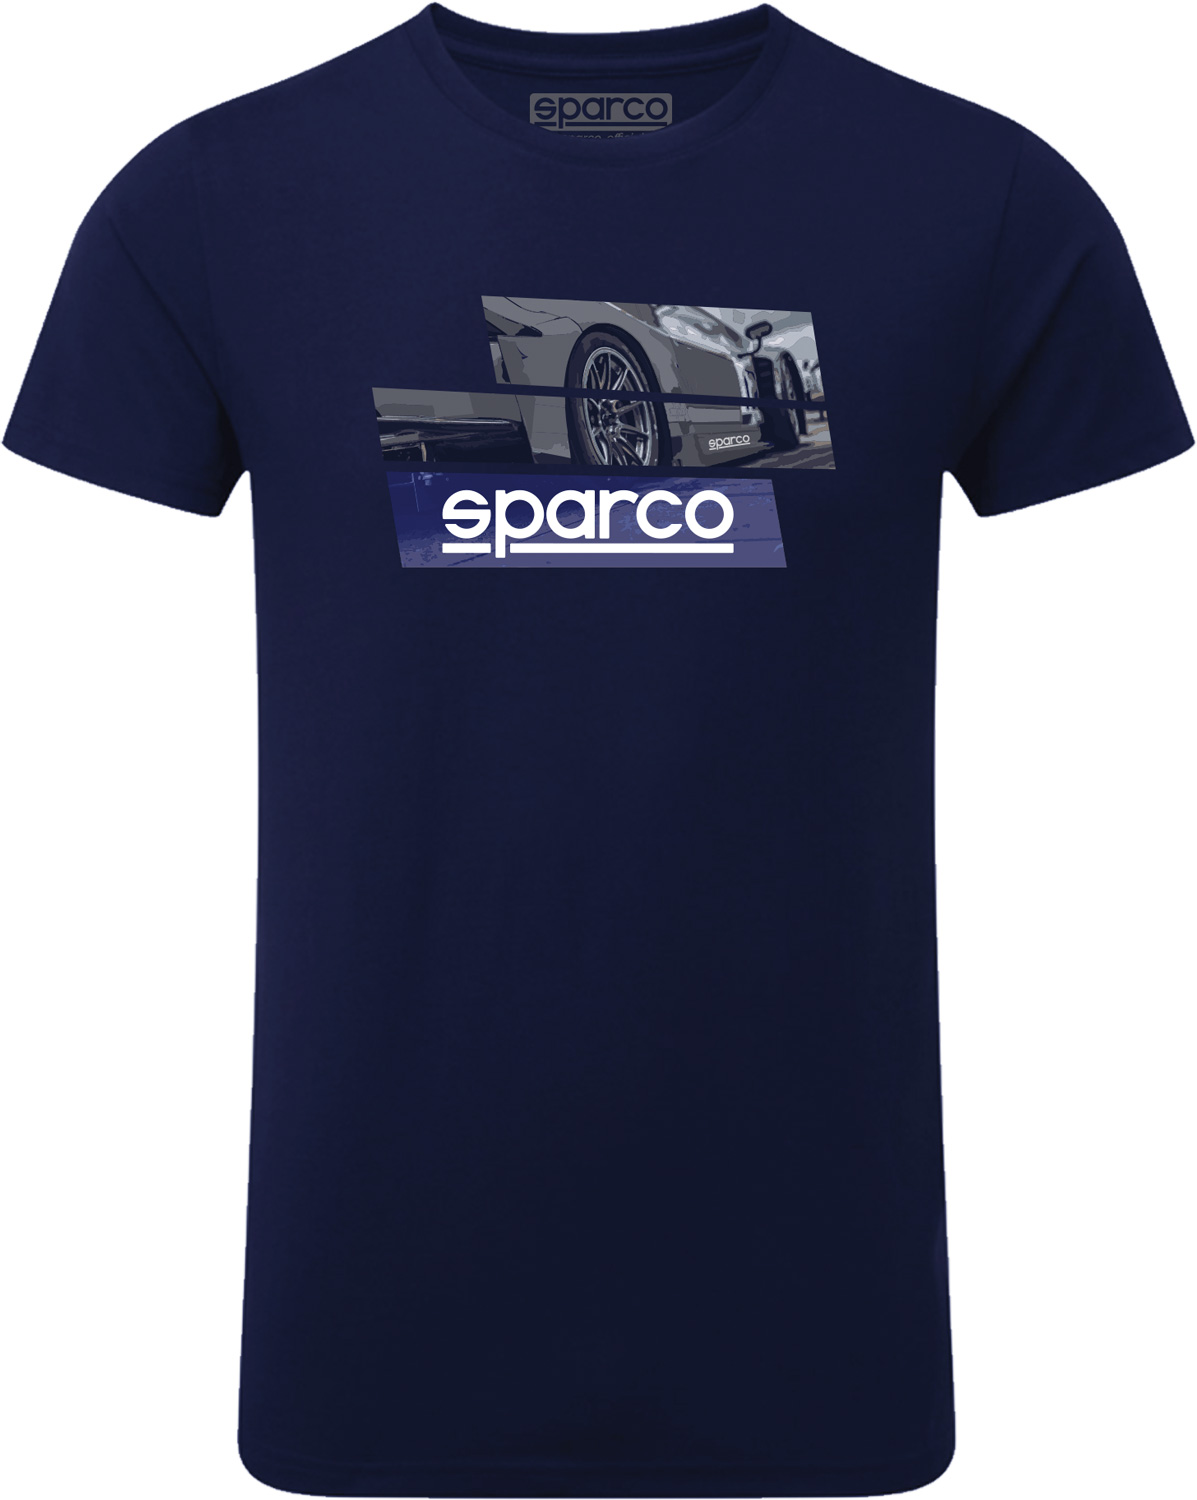 Sparco T-Shirt 1977, dunkelblau